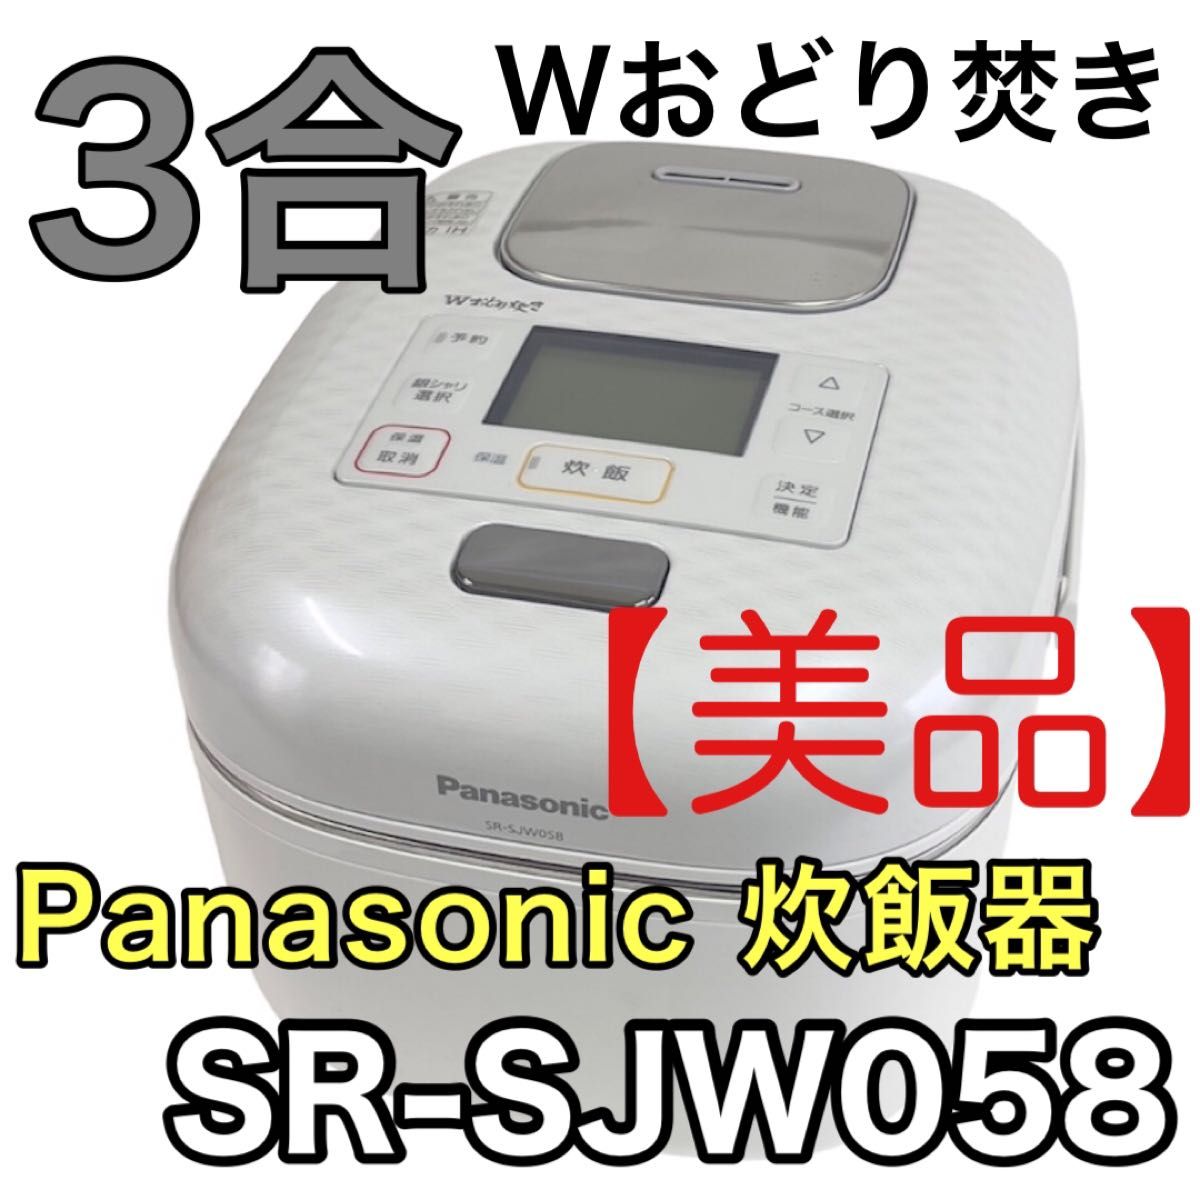 【美品】Panasonic 炊飯器 Wおどり焚き SR-SJW058 3合炊き